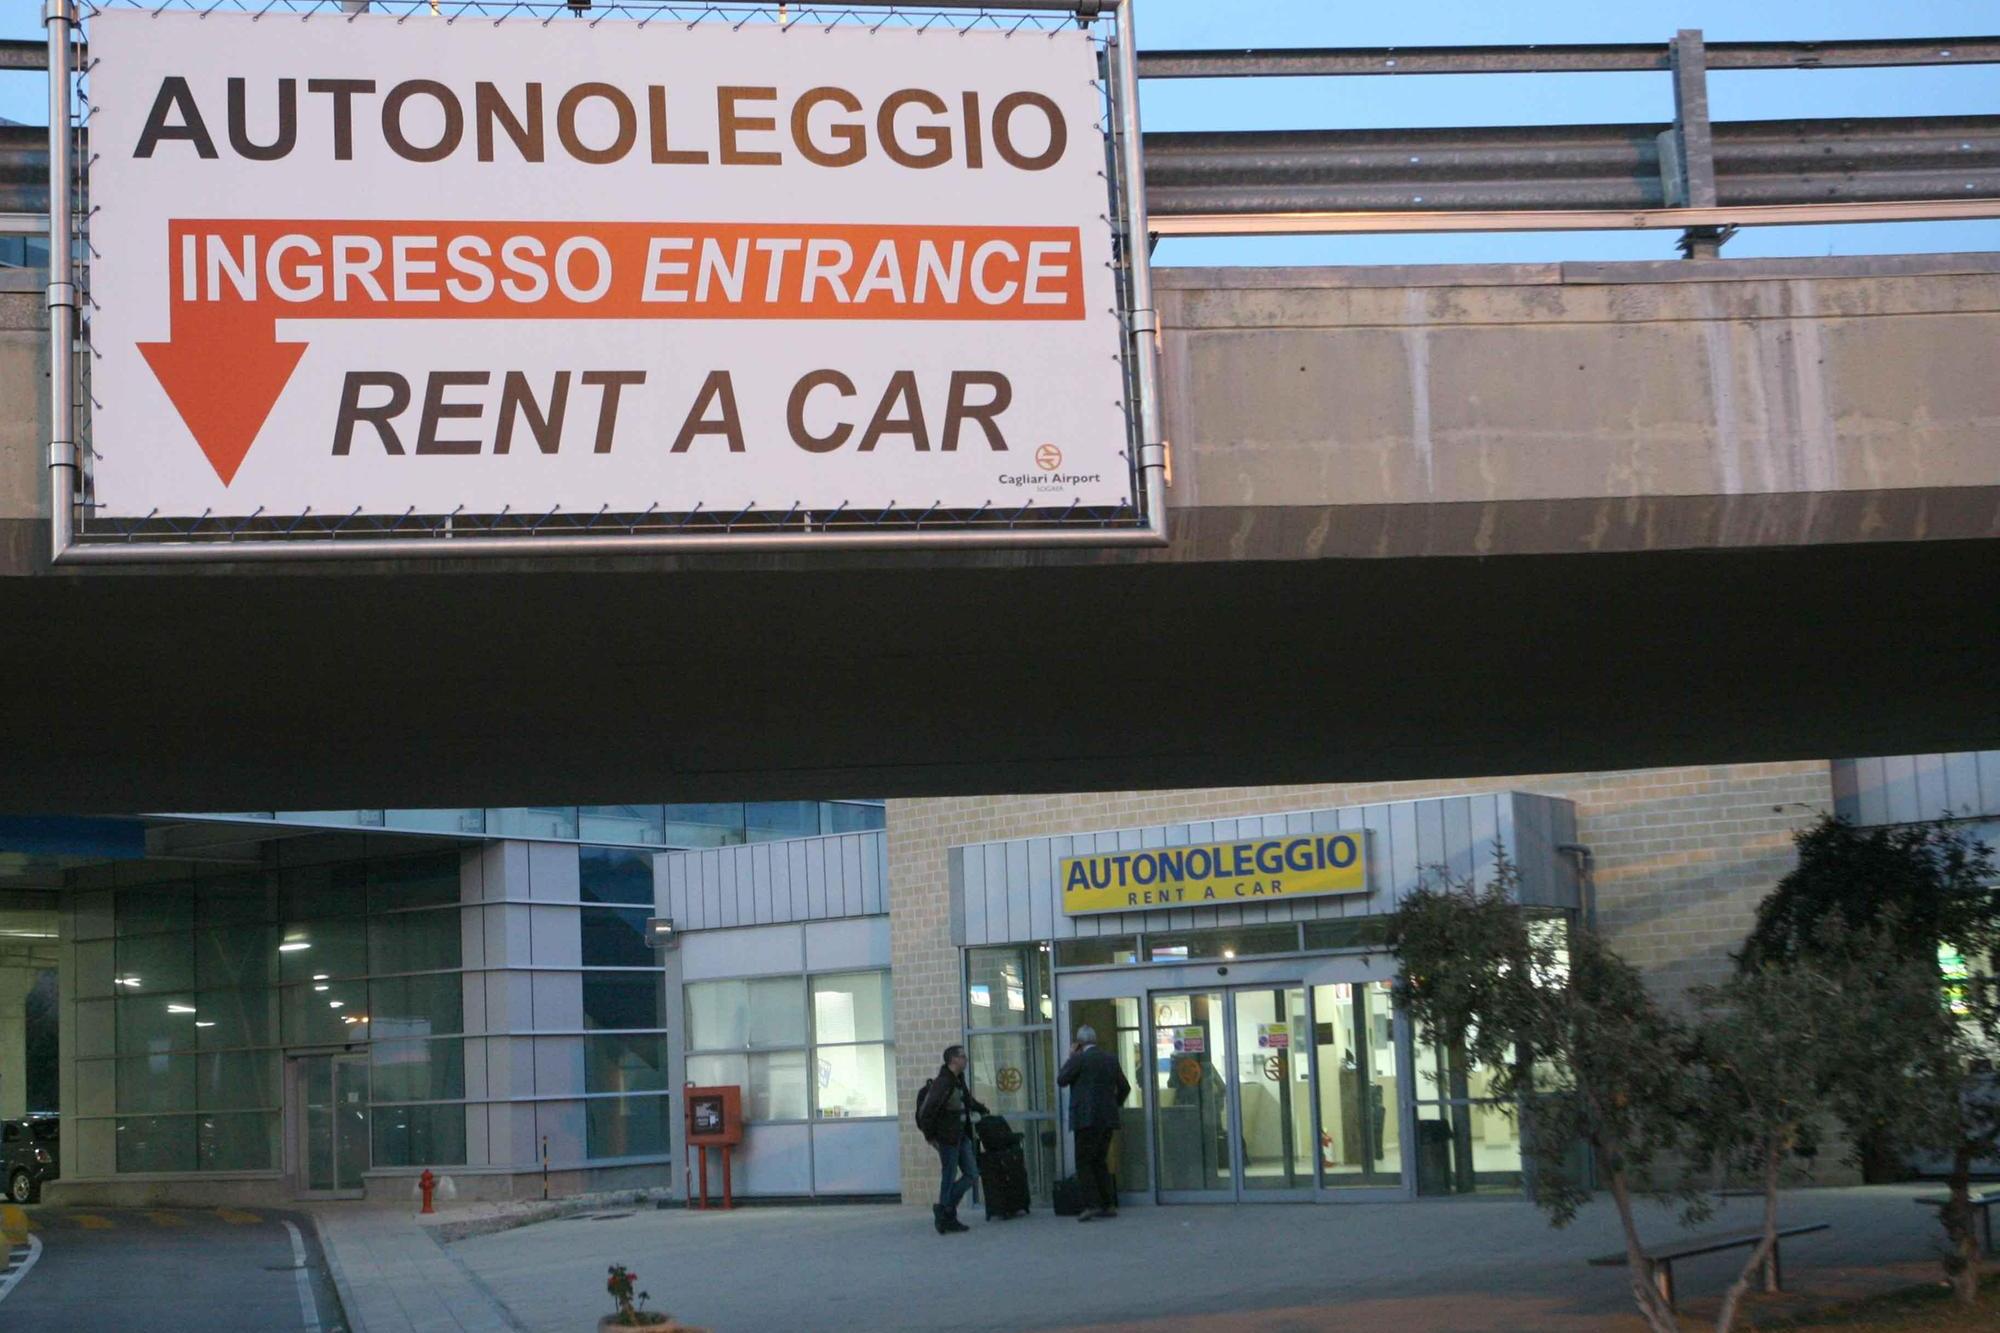 Un autonoleggio in Sardegna (foto archivio L'Unione Sarda)